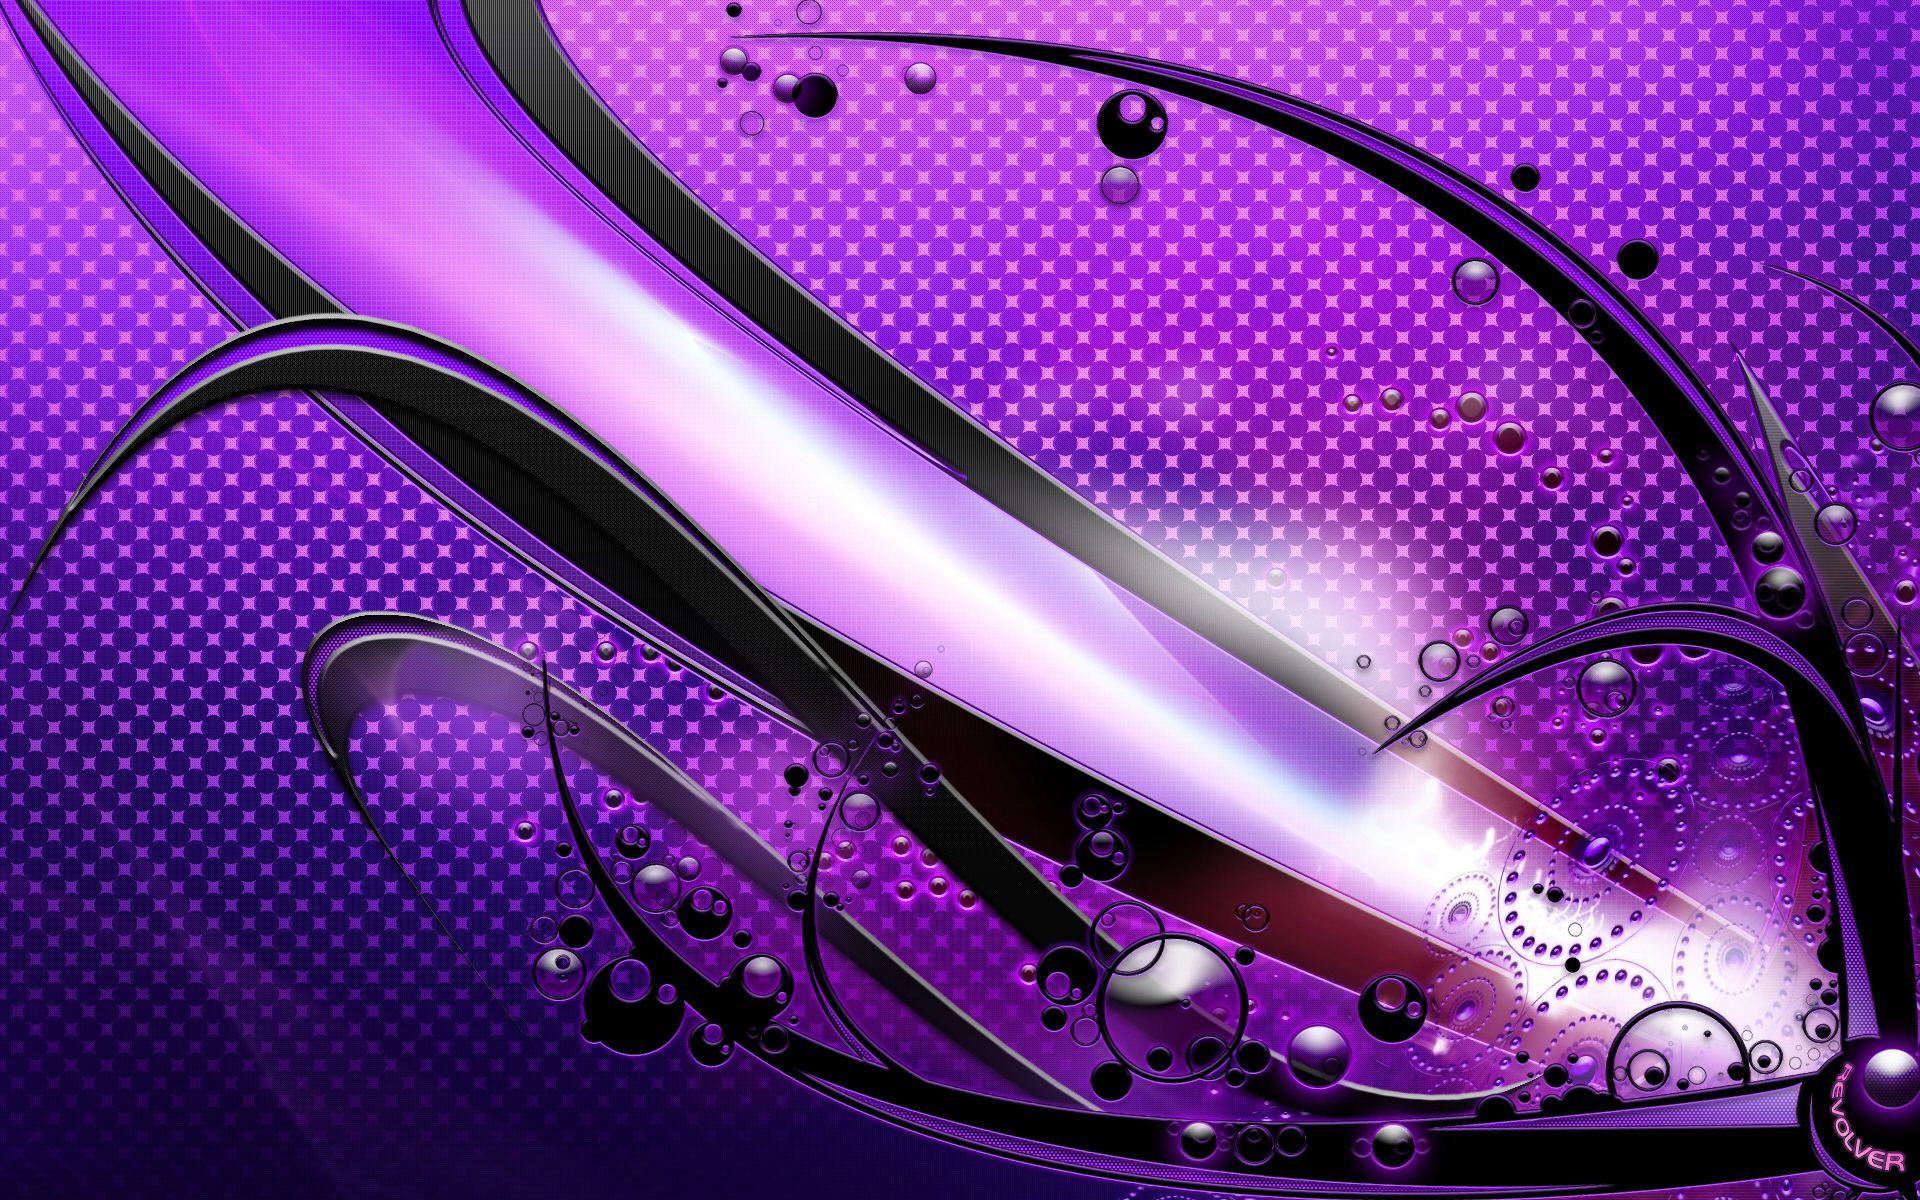 Awesome Purple Wallpapers chưa bao giờ hết hot, đặc biệt với những tín đồ của gam màu tím. Sẽ là một sự tuyệt vời đối với bất kỳ ai đã từng yêu màu tím, những hình nền sẽ làm bạn phát cuồng với các dạng tím khác nhau, tạo nên sự khác biệt đầy thu hút và cuốn hút mỗi khi mở máy tính. Hãy sẵn sàng để đắm chìm vào thế giới tuyệt vời của hình nền tím thật tuyệt vời!